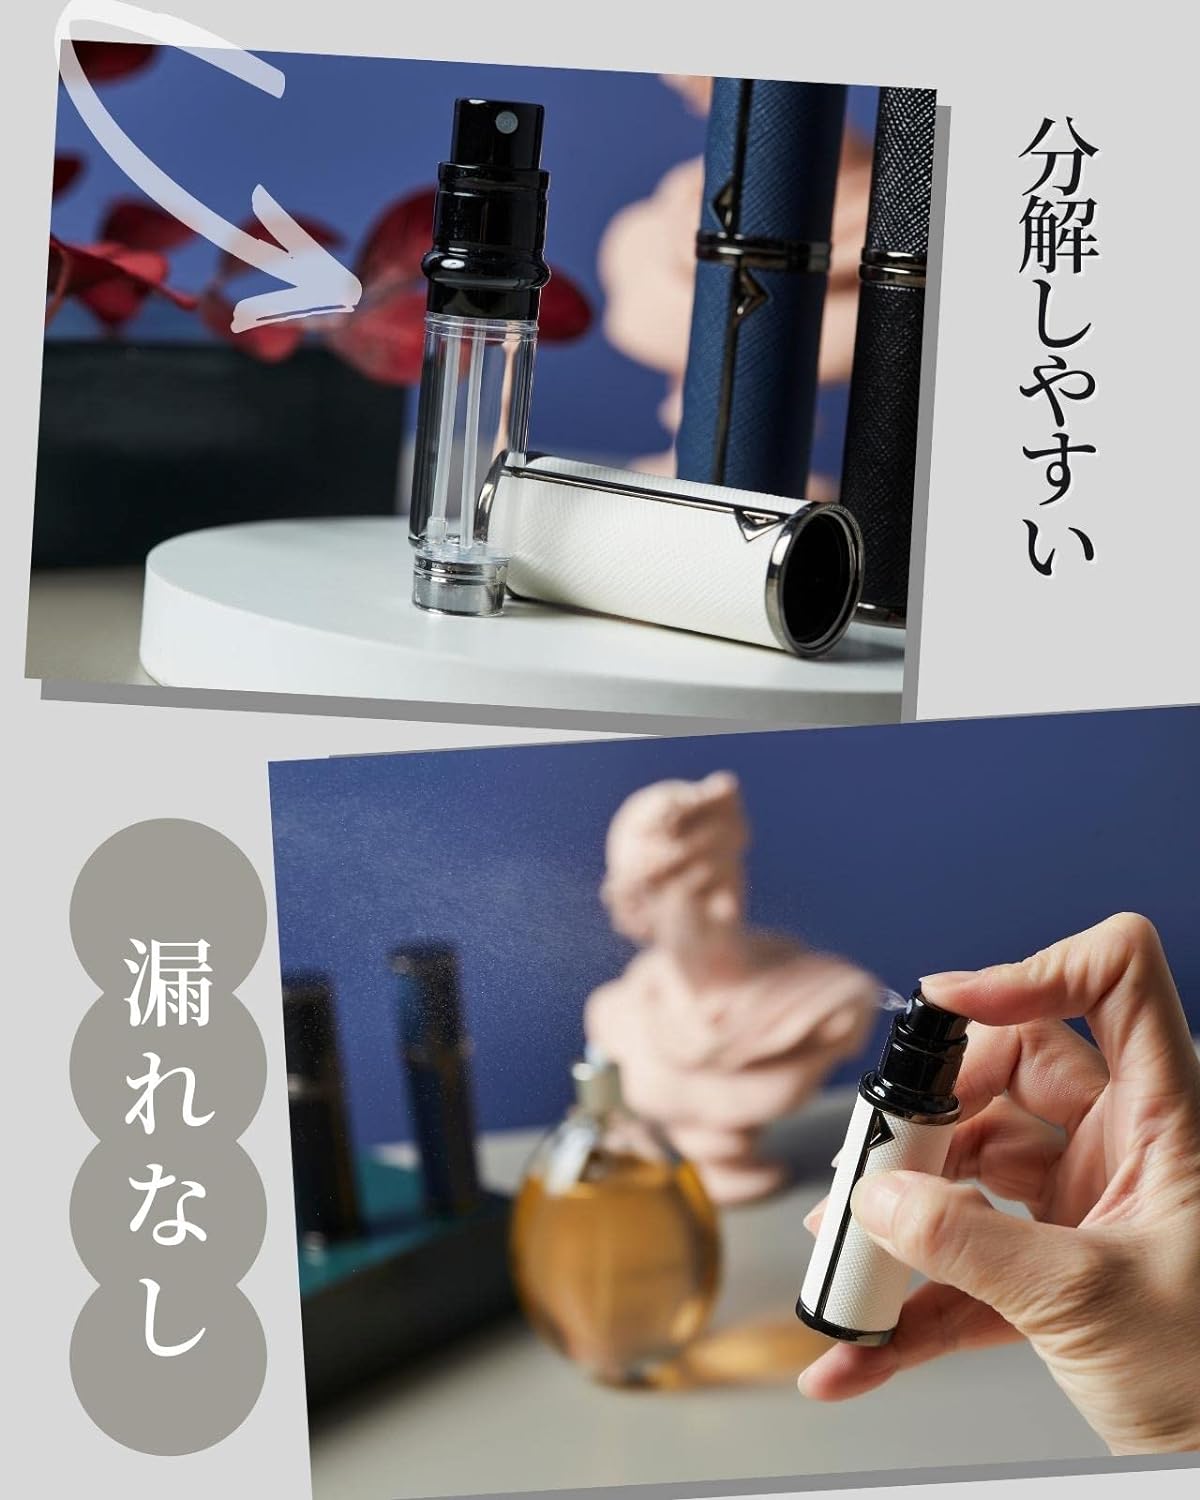 アトマイザー 香水 レザースプレー 噴霧器 携帯用 詰め替え容器 香水用 機内持ち込み可能 プシュ式 (白)